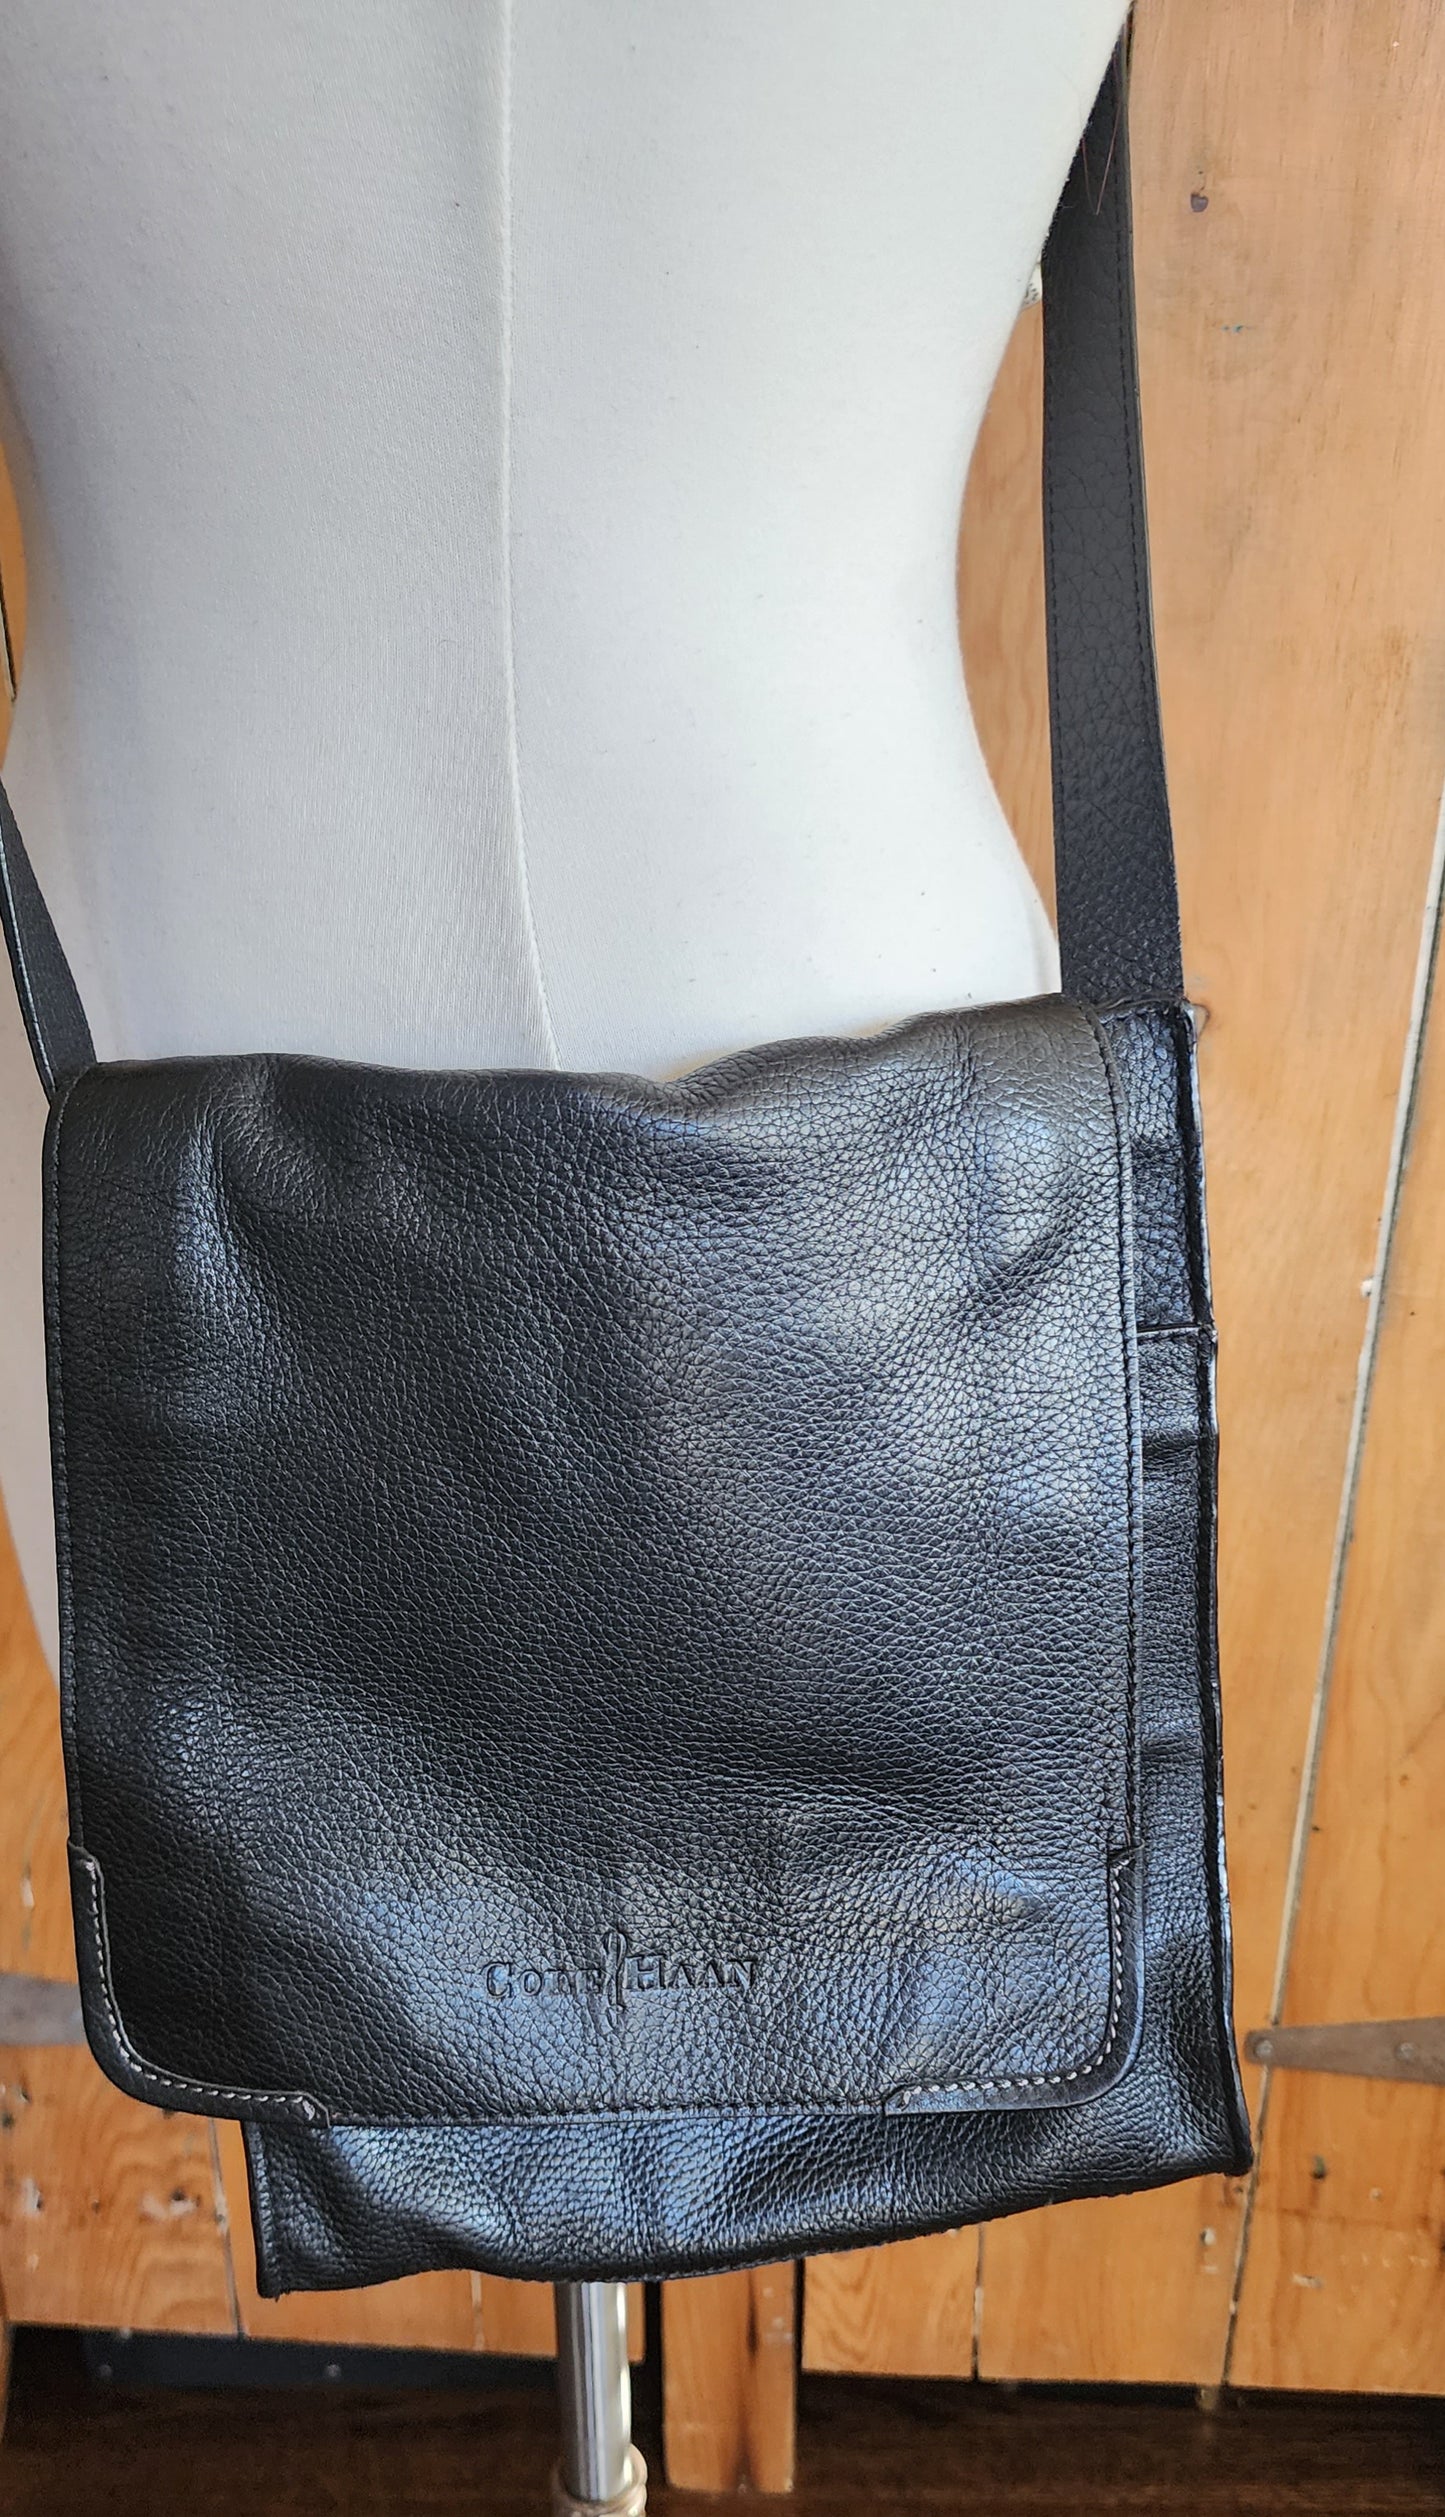 Cole Haan Messenger Bag Black Leather